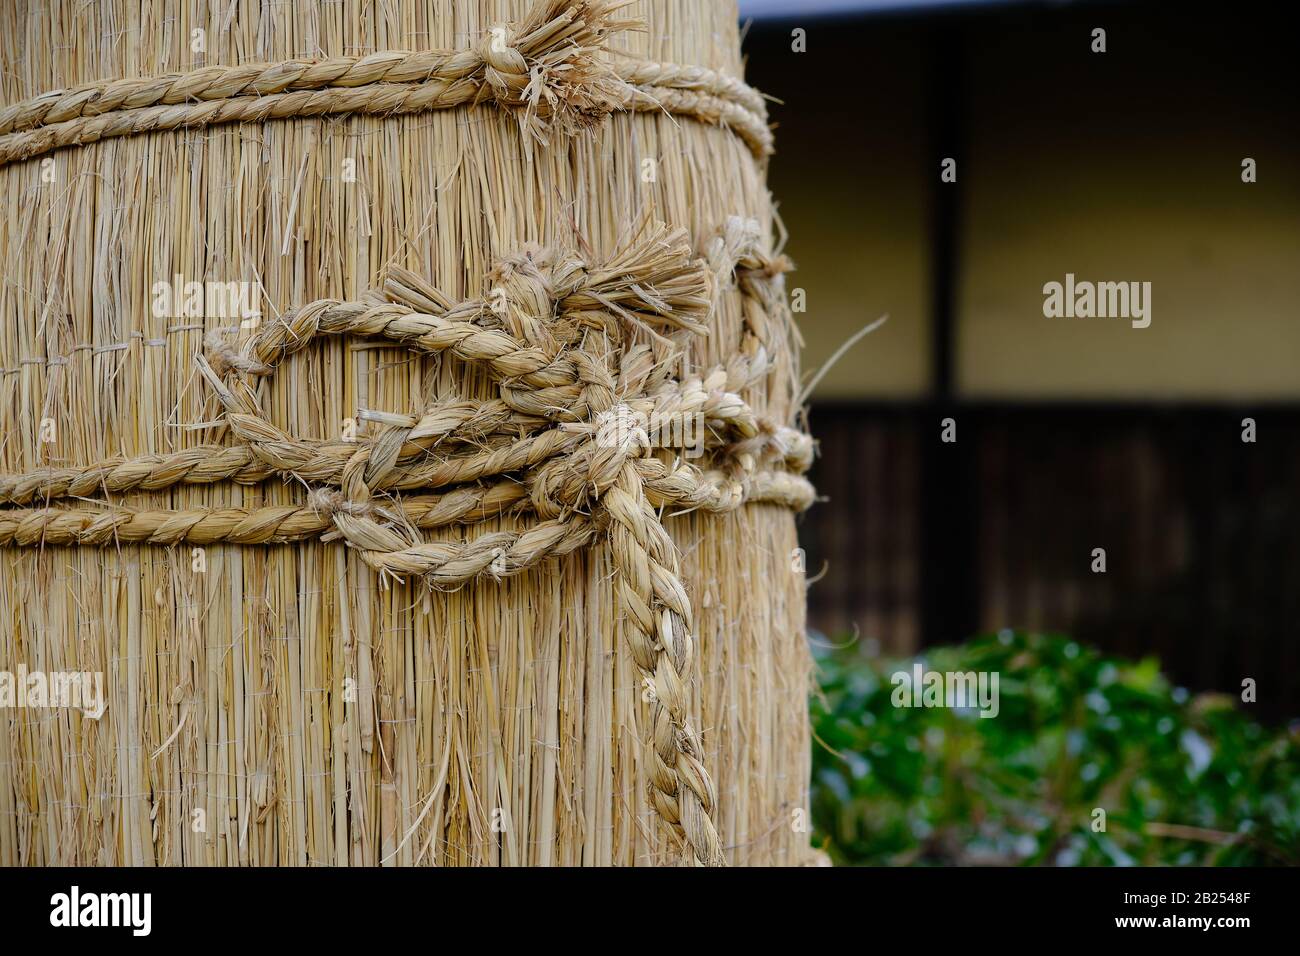 Une courroie de paille komomaki autour d'un pin dans un Japanesegarden, Tokyo. Ces ceintures sont utilisées pour piéger les insectes. Banque D'Images